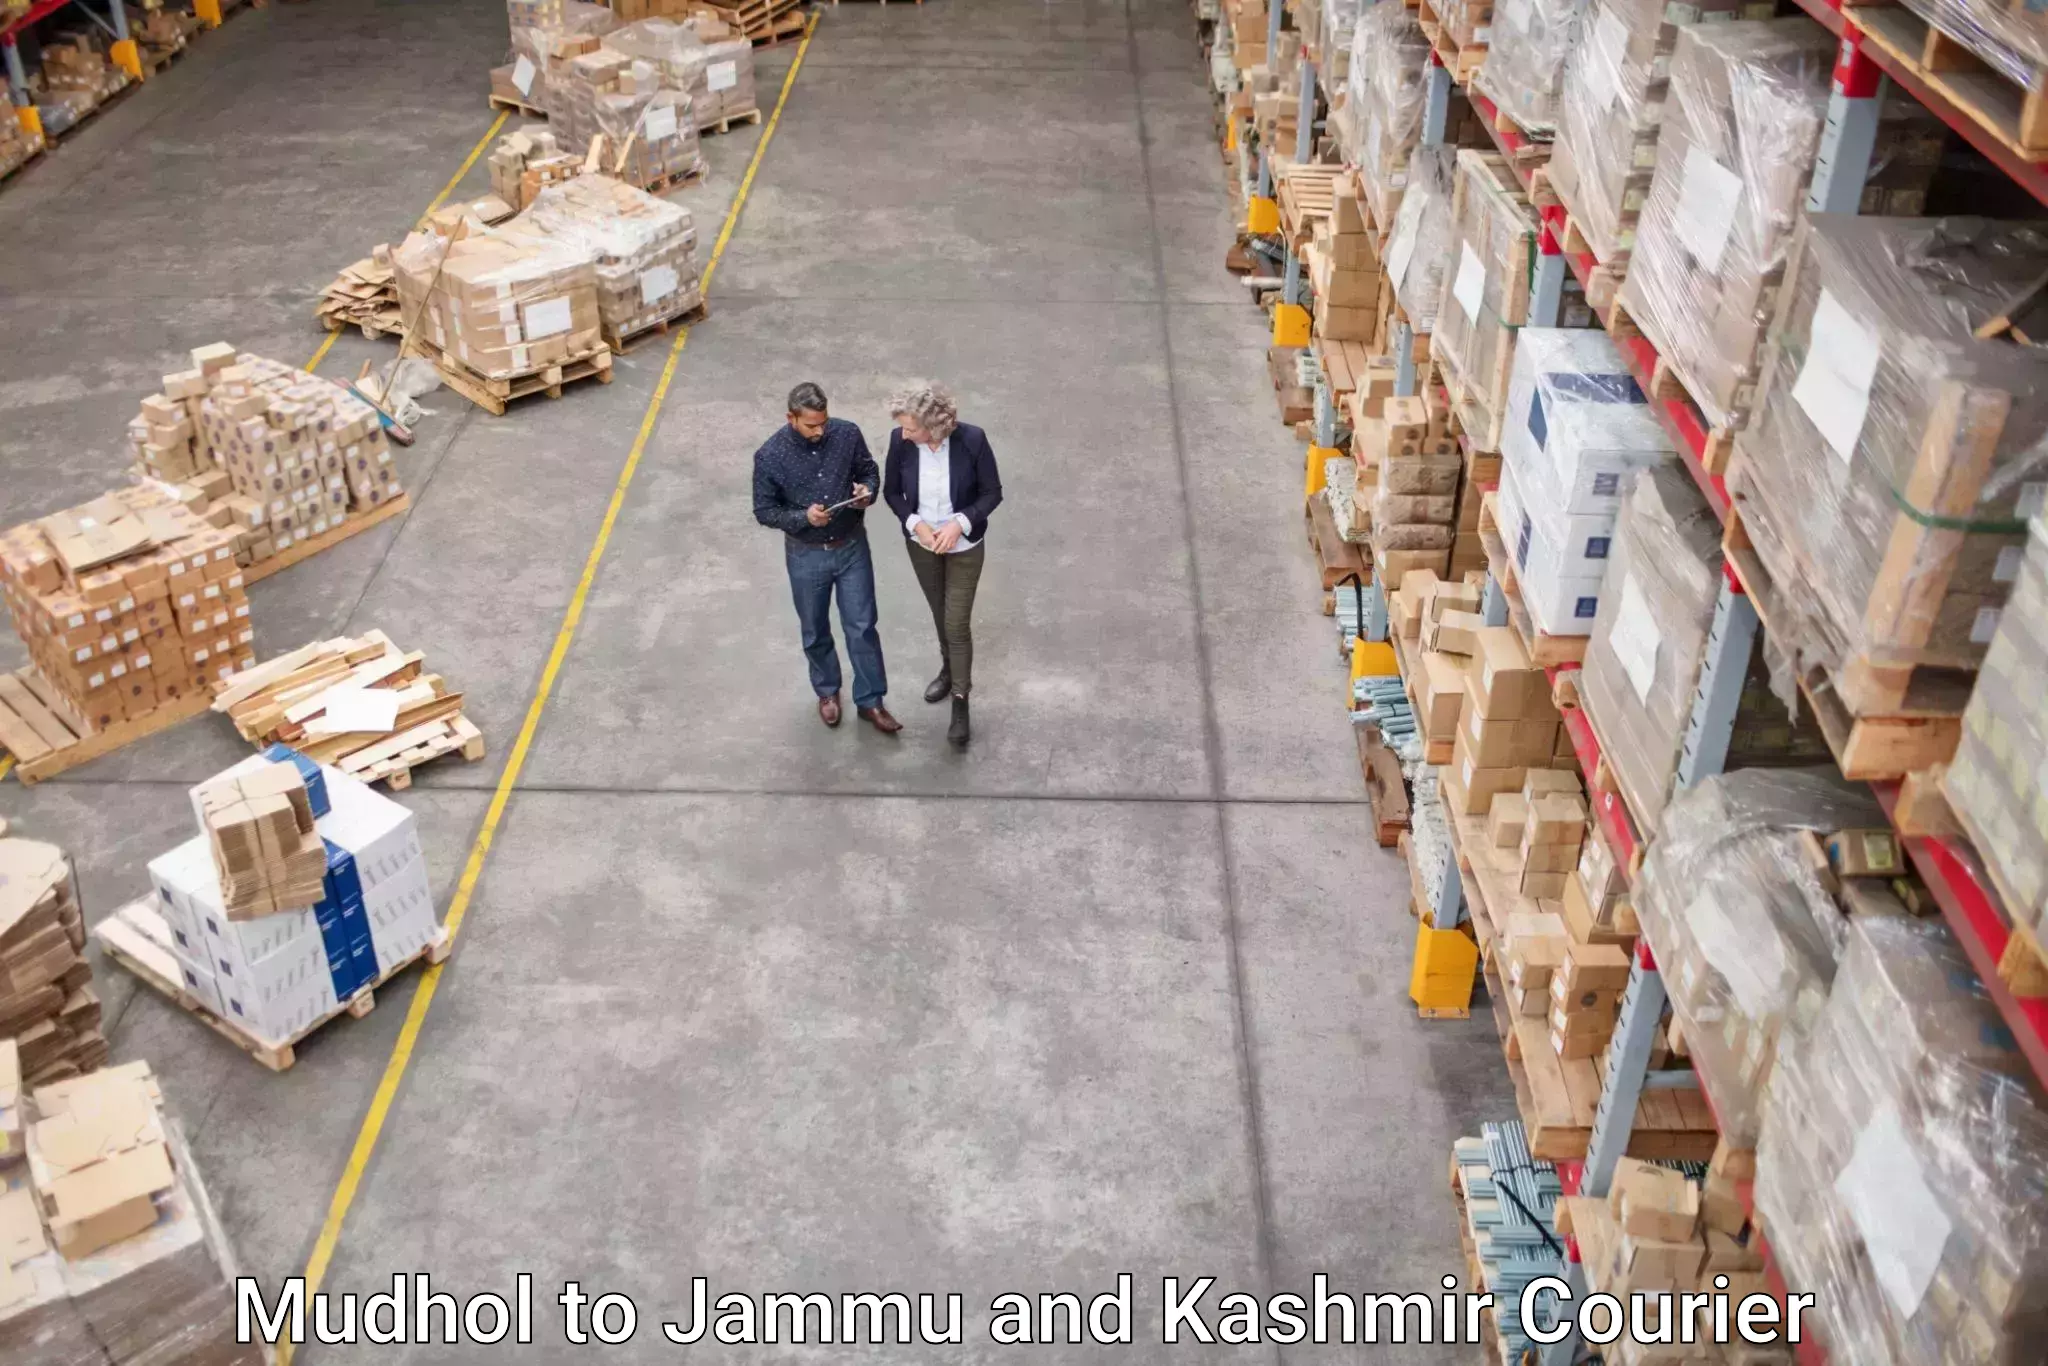 Courier service partnerships Mudhol to Srinagar Kashmir